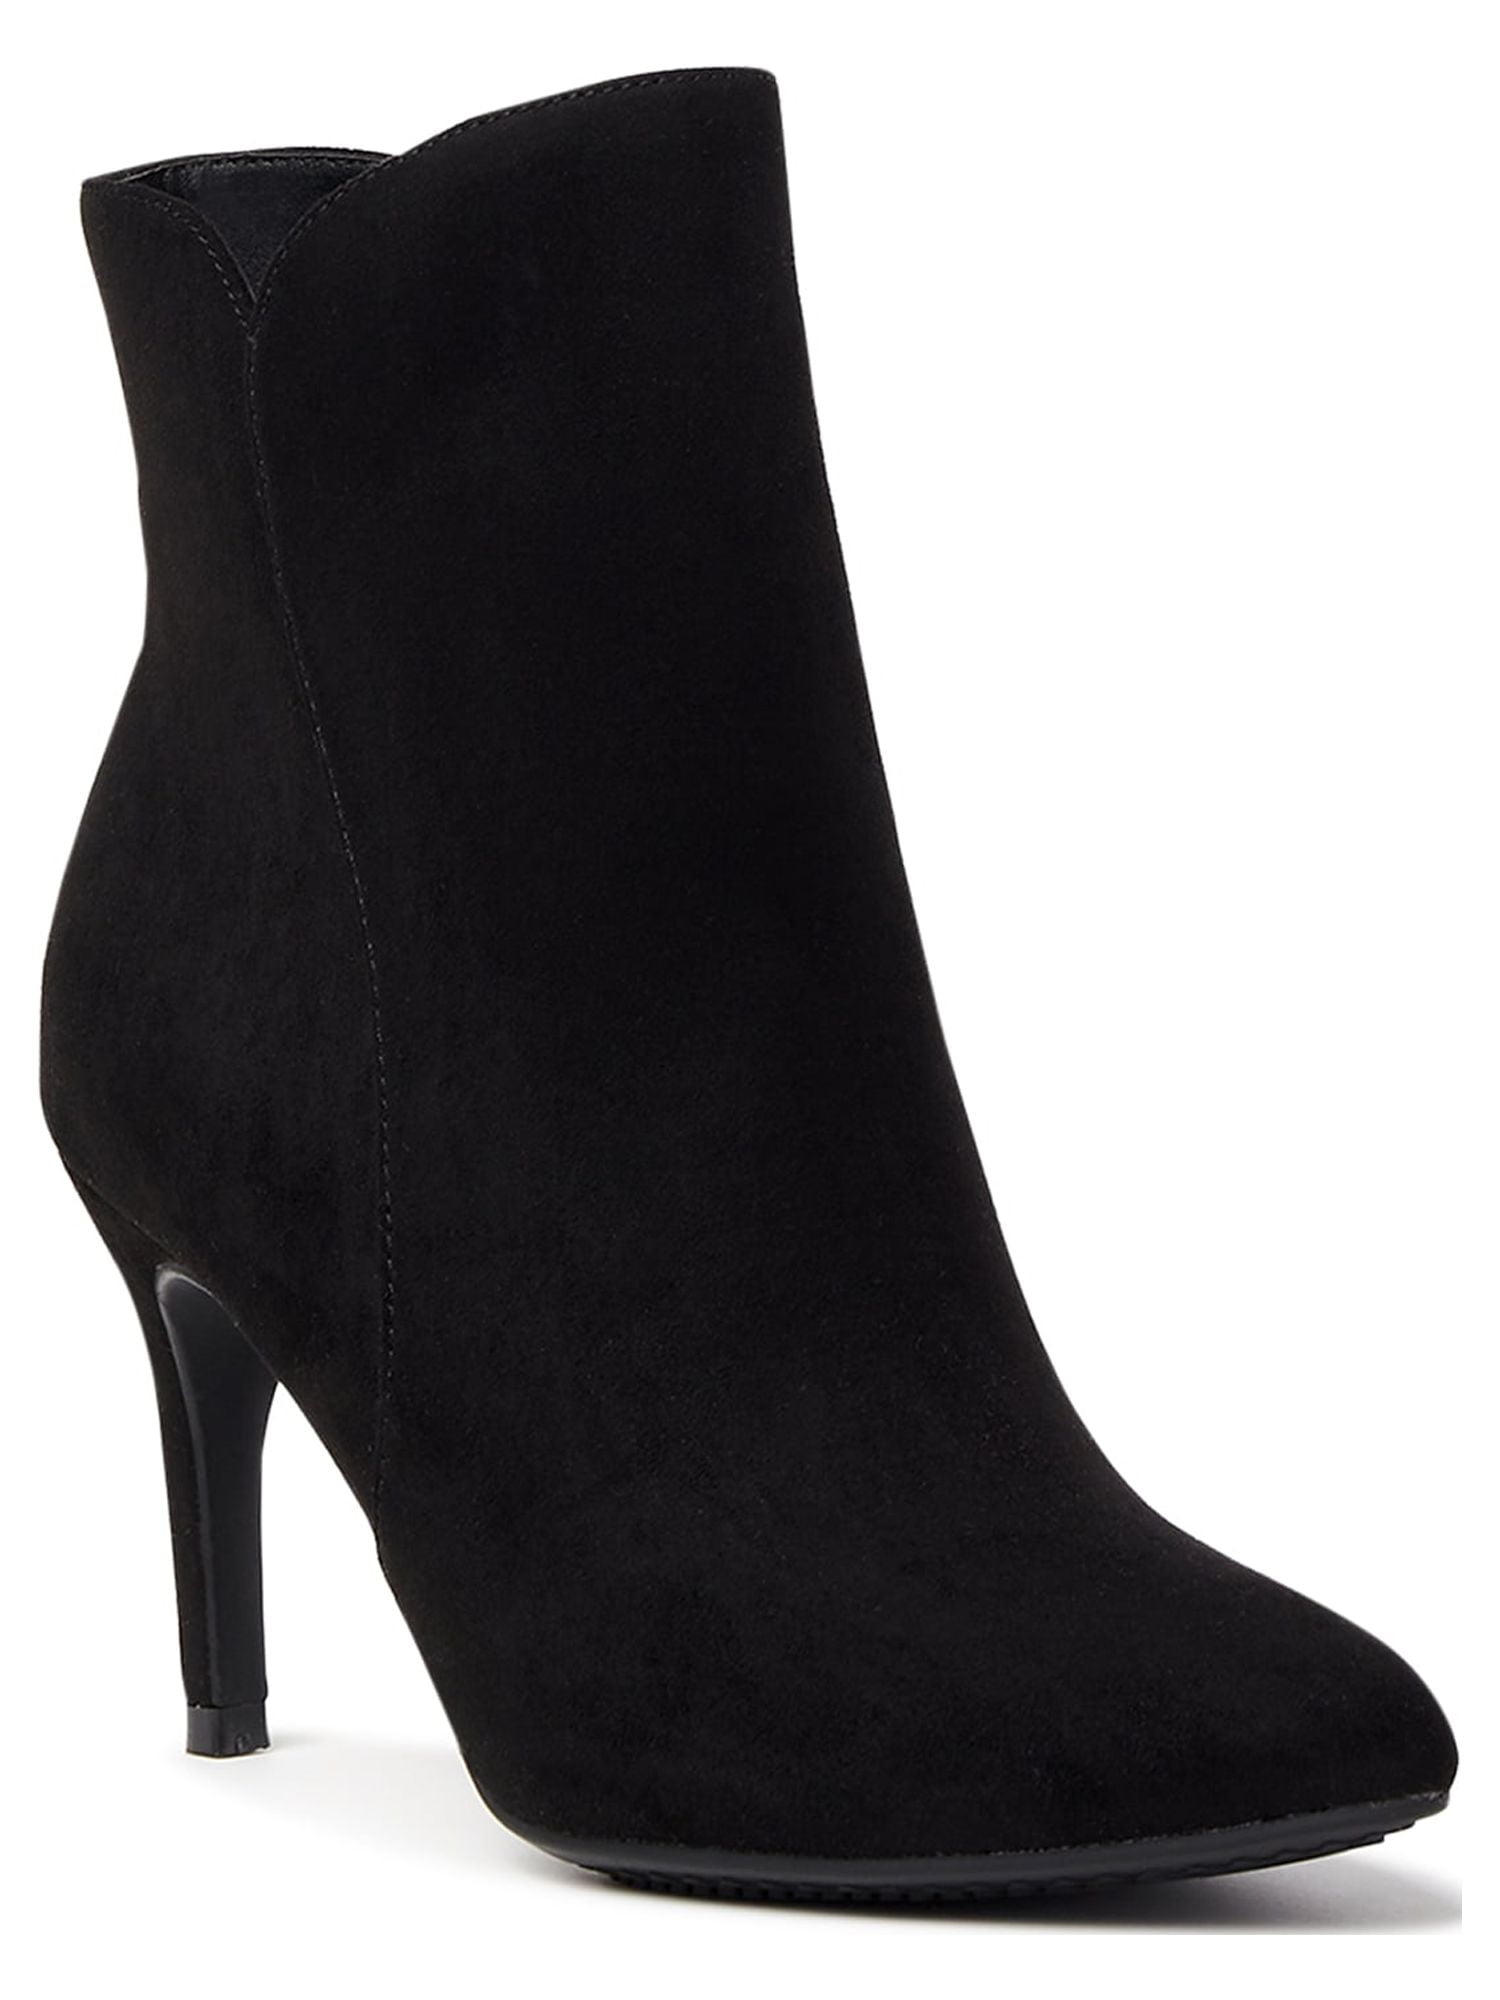 Scoop Women's Stiletto Ankle Booties - Walmart.com